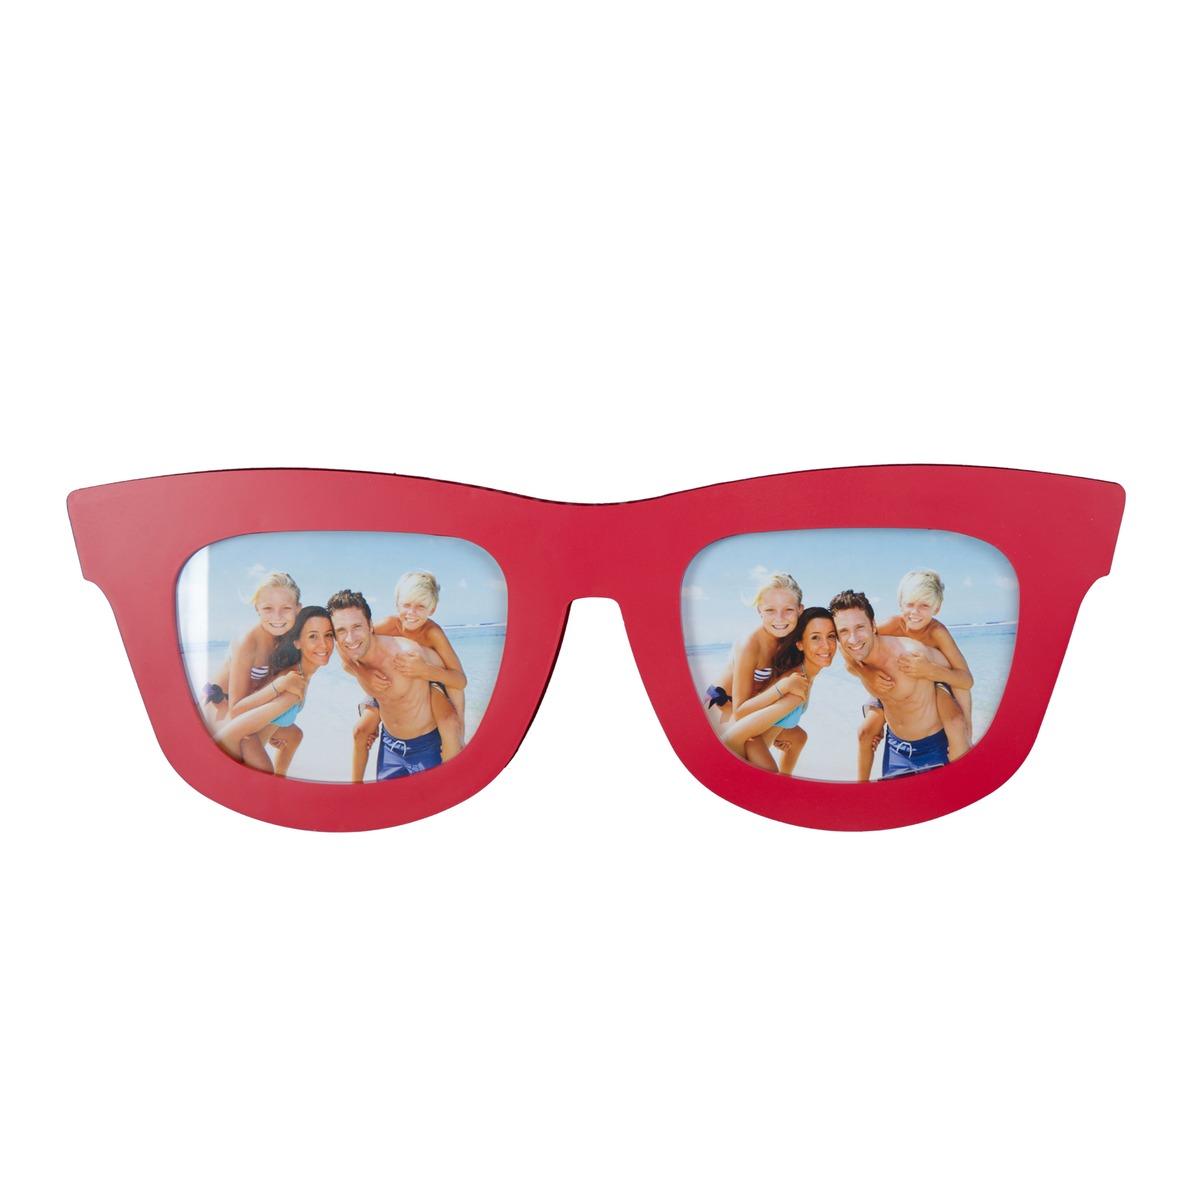 Pêle-mêle photos modèle lunettes - 18,5 x 50 cm - Différents coloris